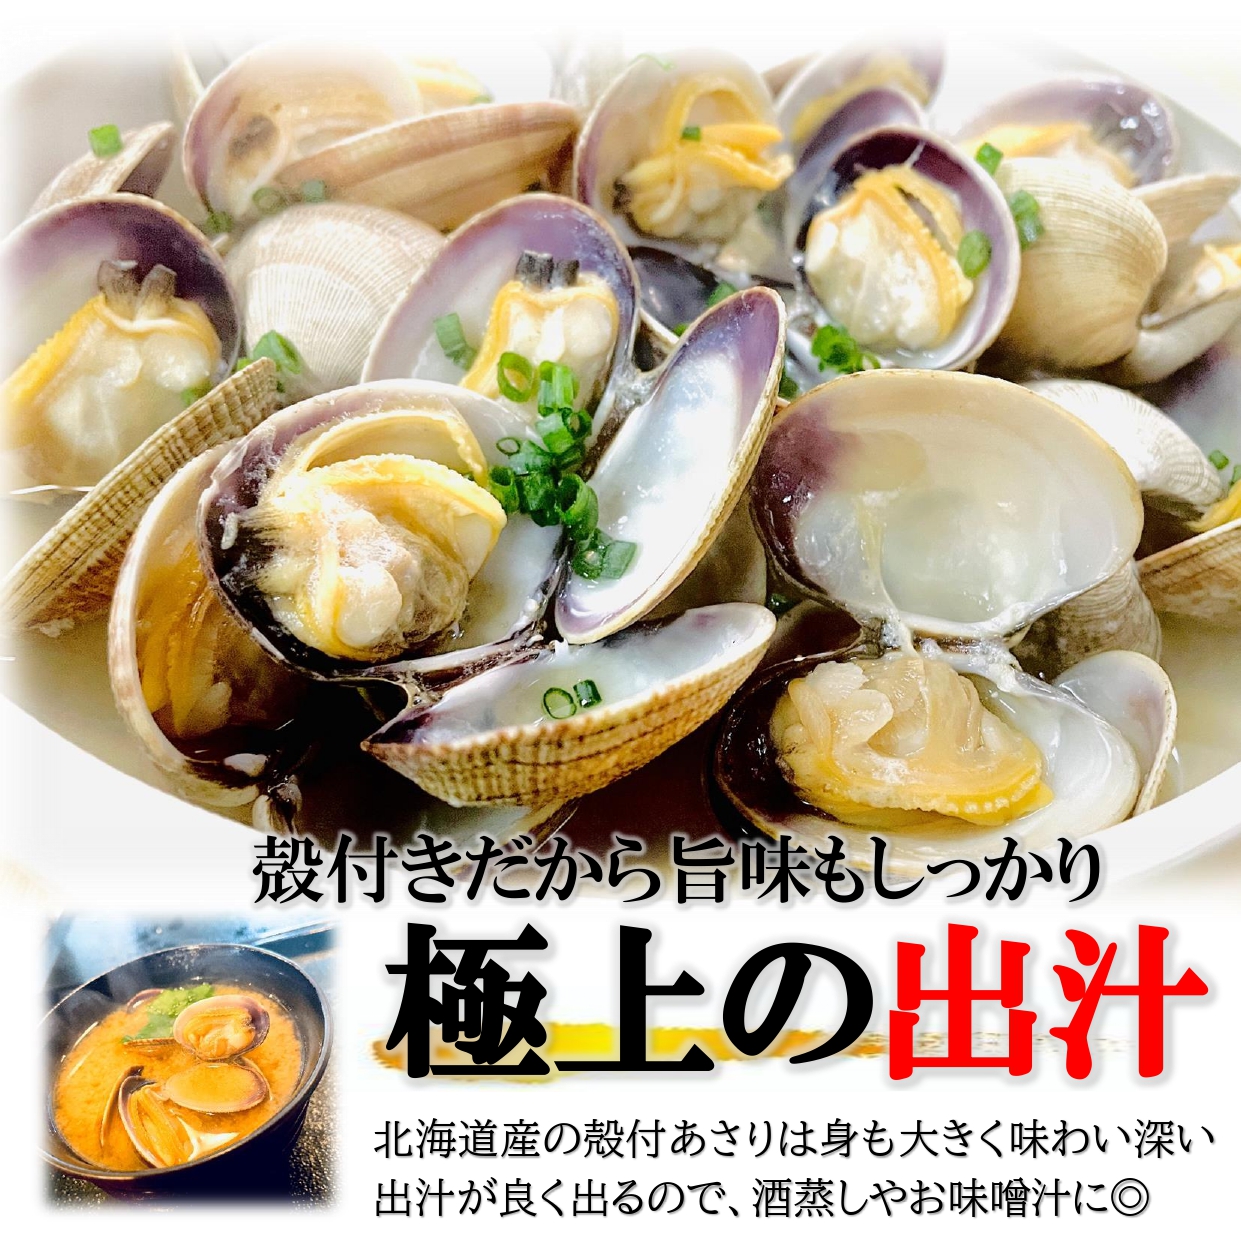 ....1kg Hokkaido production large grain 1 piece 20~30g large grain ... domestic production ... natural ... littleneck clam . profit ..